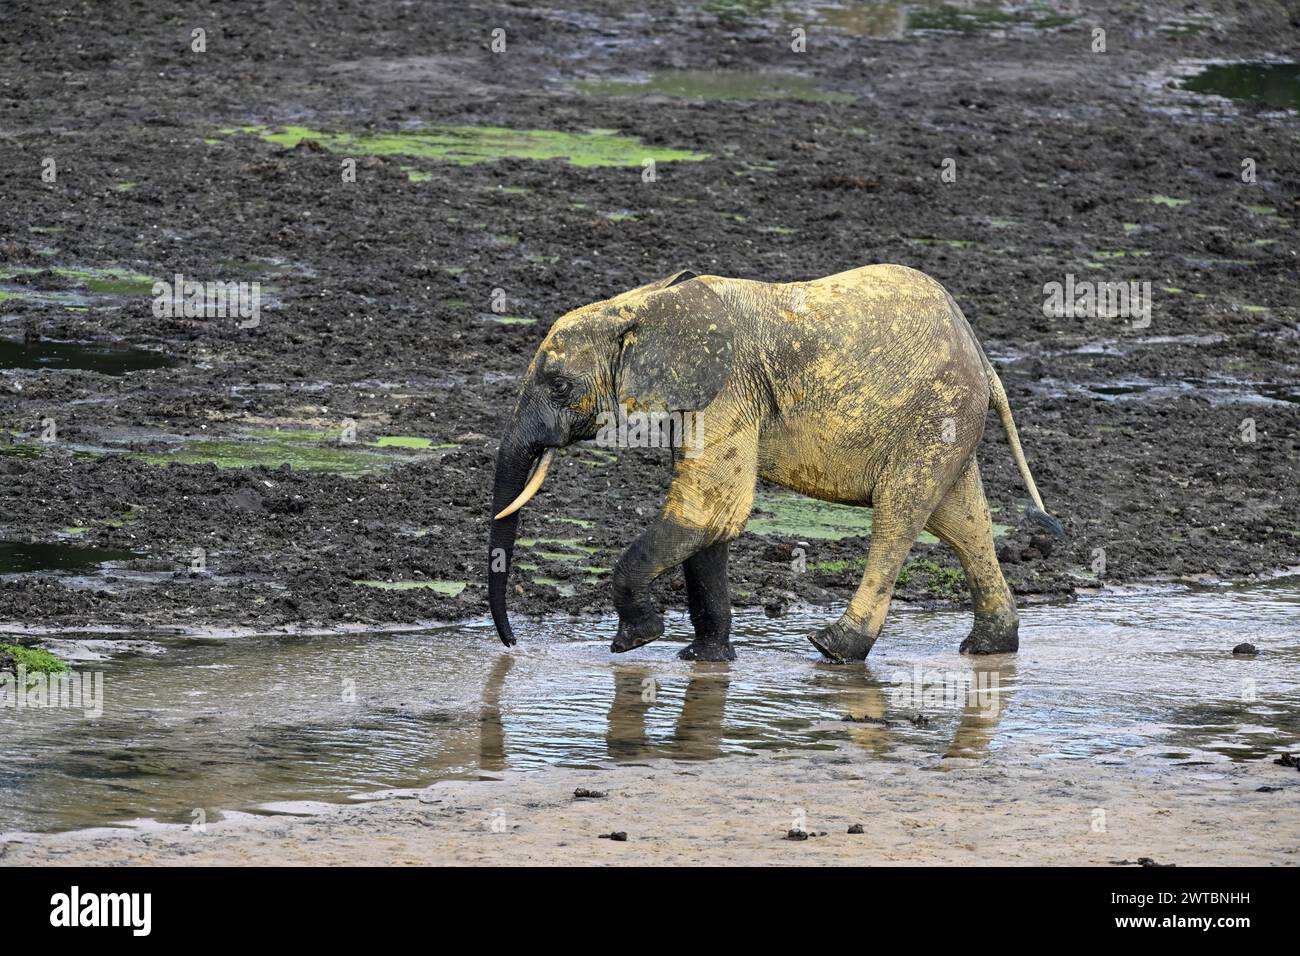 African forest elephant (Loxodonta cyclotis) in the Dzanga Bai forest clearing, Dzanga-Ndoki National Park, Unesco World Heritage Site, Dzanga-Sangha Stock Photo